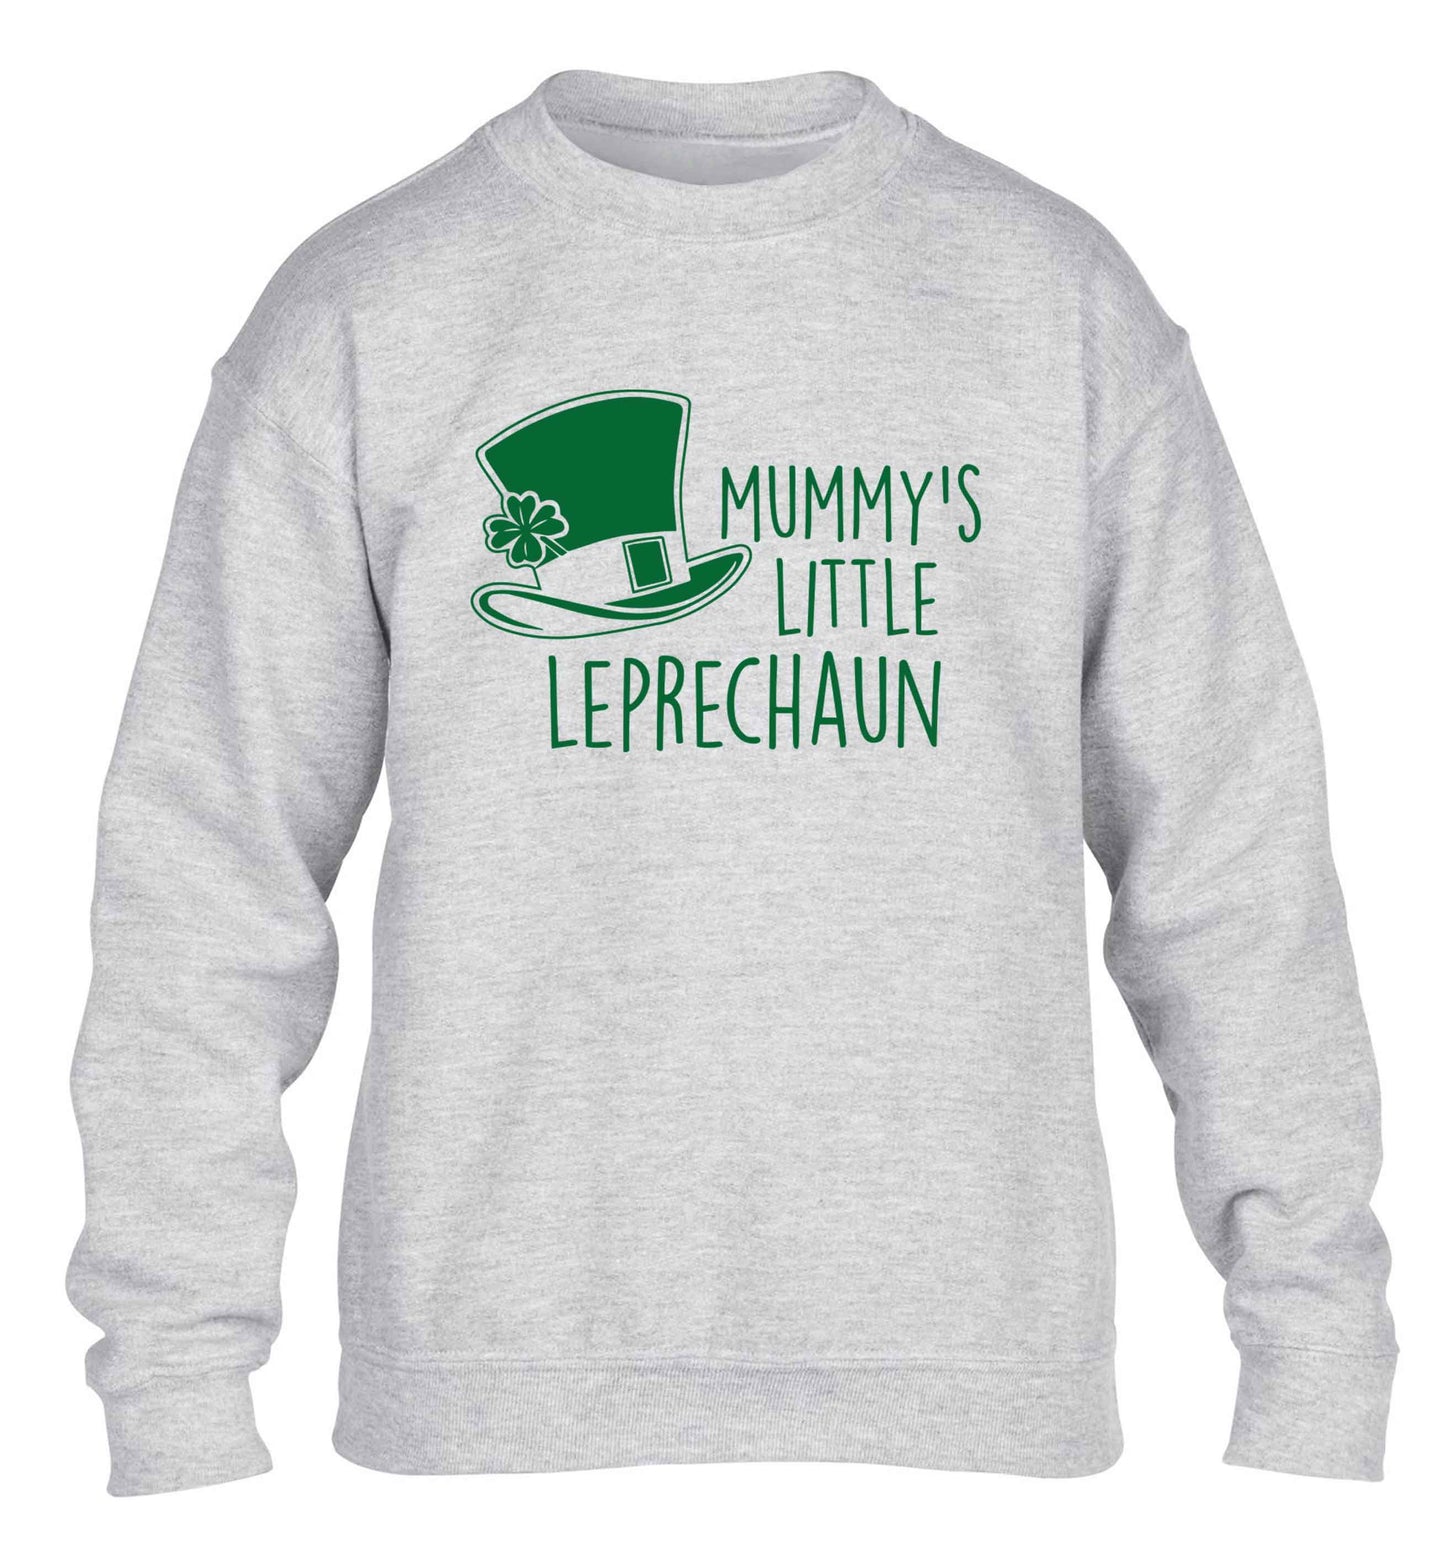 Mummy's little leprechaun children's grey sweater 12-13 Years